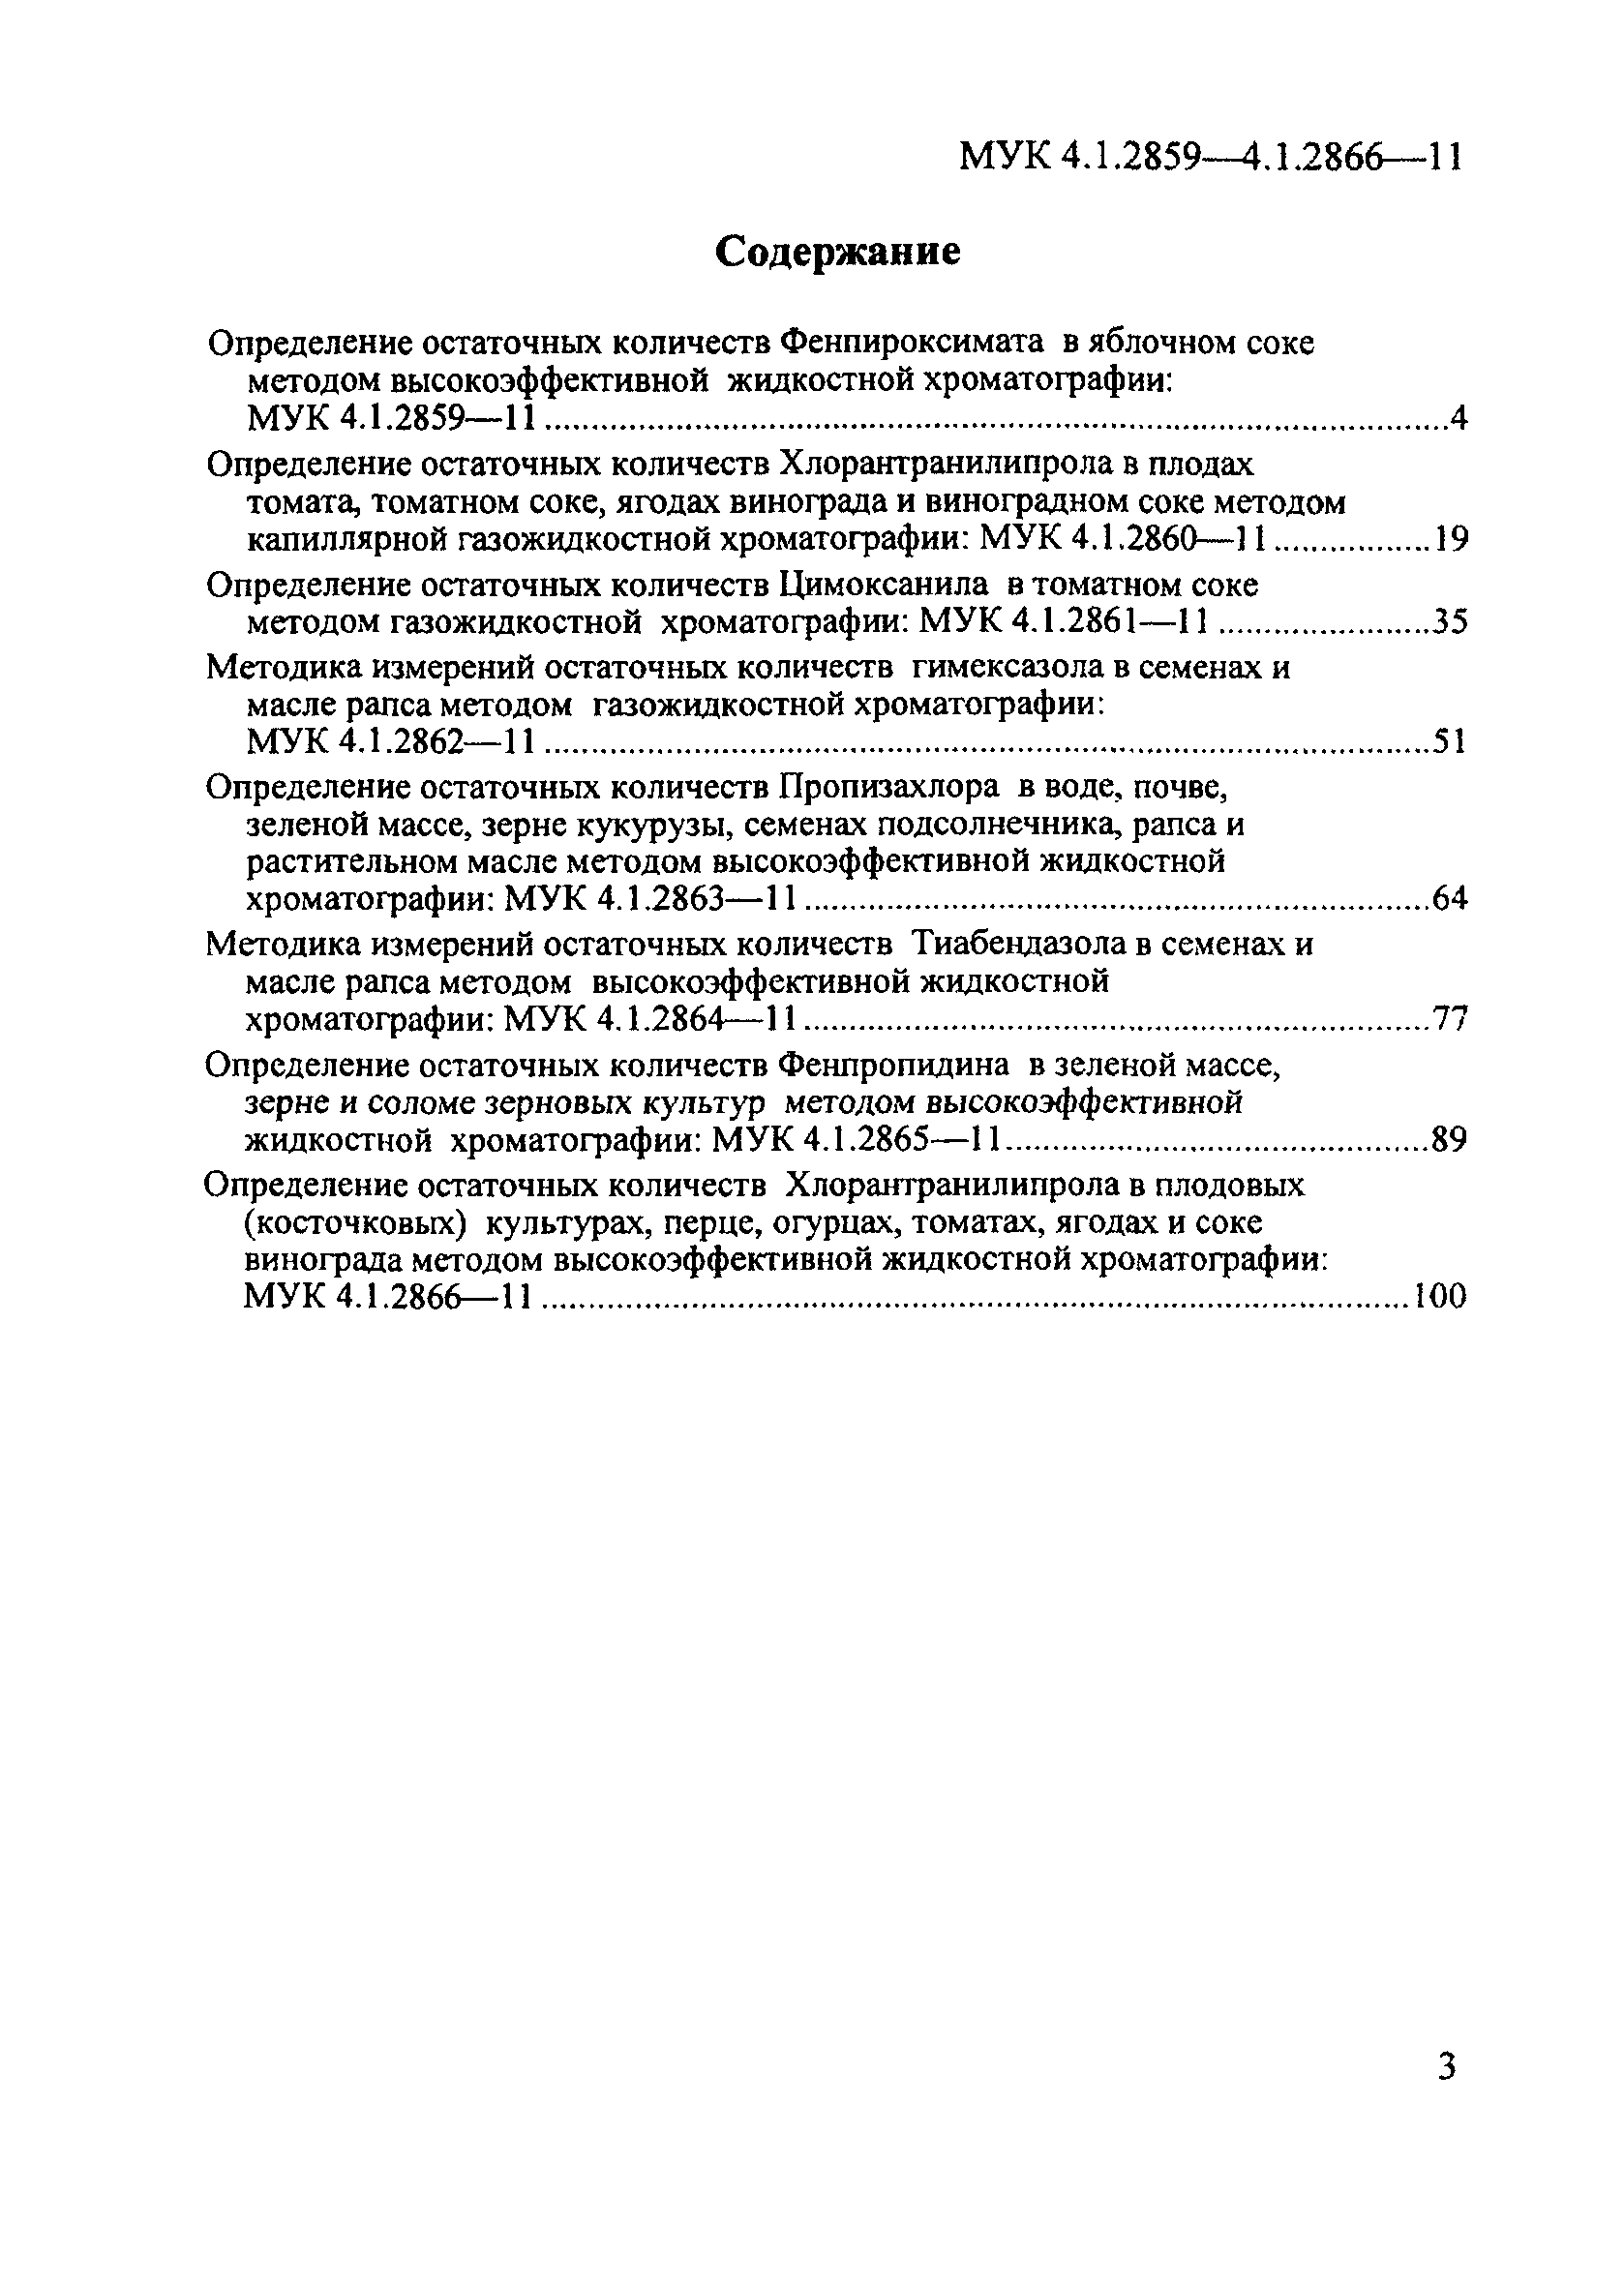 МУК 4.1.2861-11